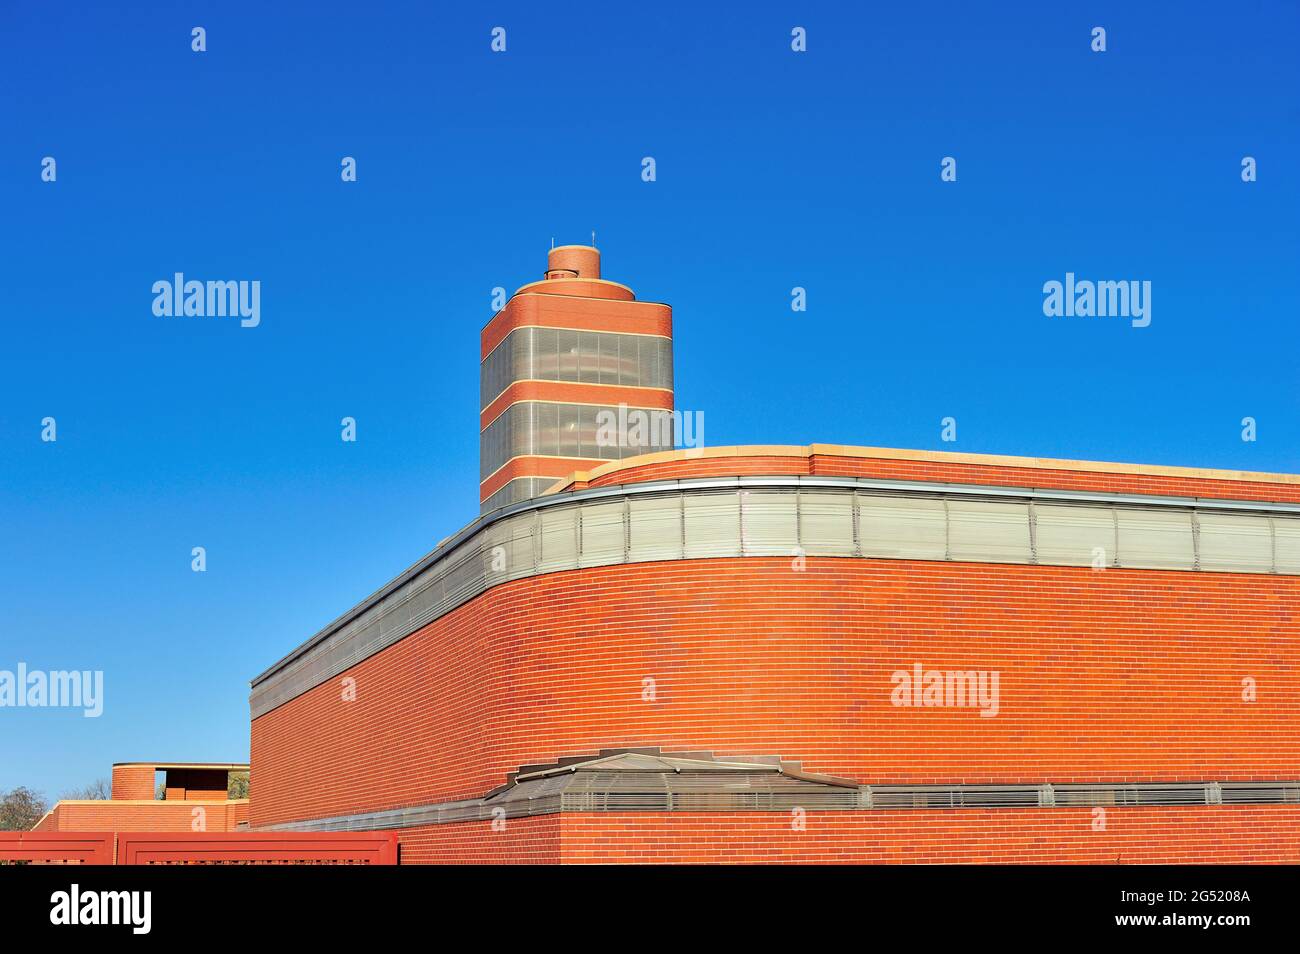 Racine, Wisconsin, Stati Uniti. Edificio principale e torre di ricerca presso la sede centrale della SC Johnson, famosa per essere stata progettata dall'architetto Frank Lloyd Wright. Foto Stock